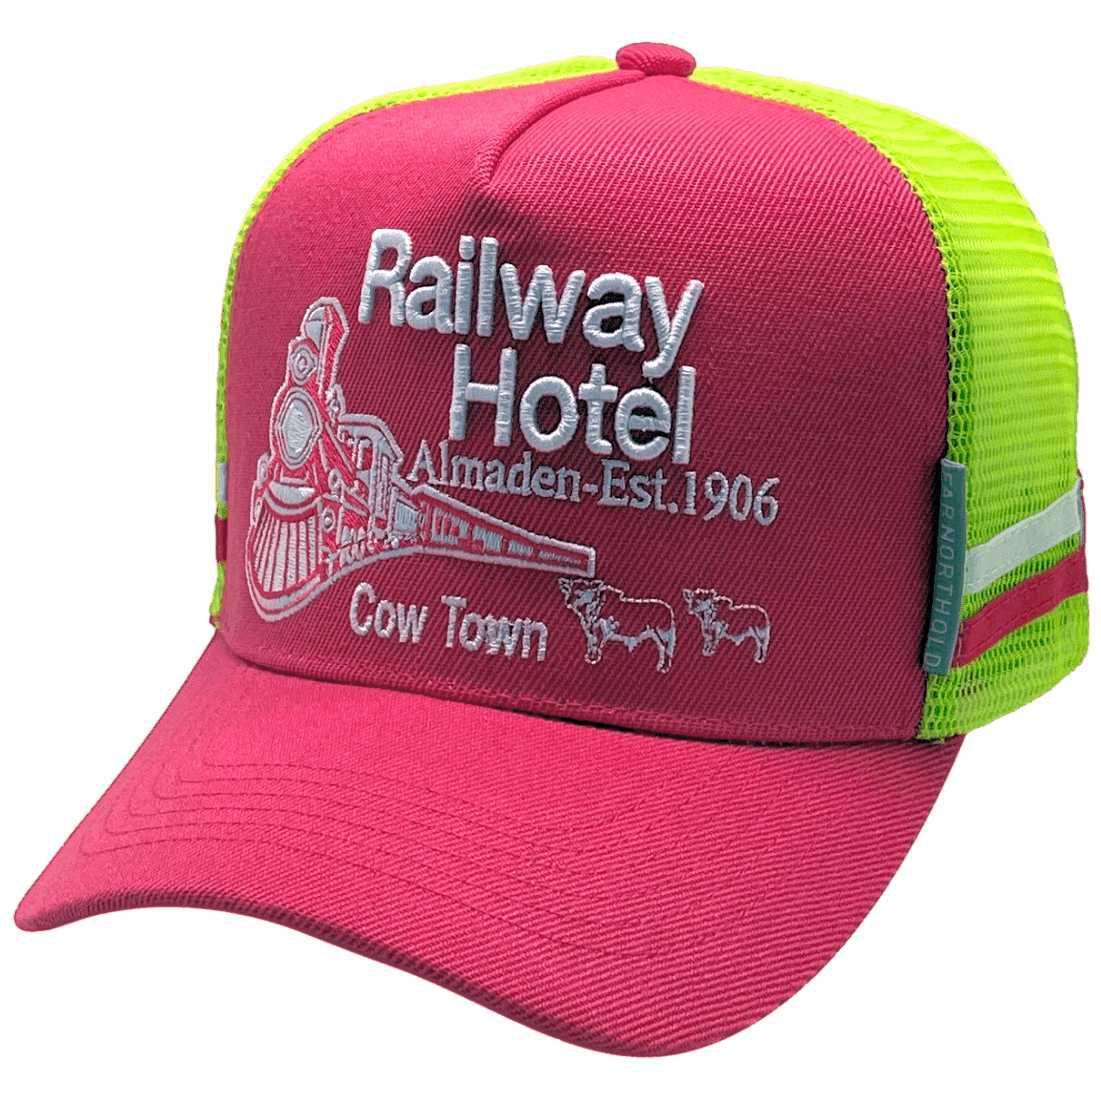 Railway Hotel Almaden QLD - Original Midrange Aussie Trucker Hat with double side bands